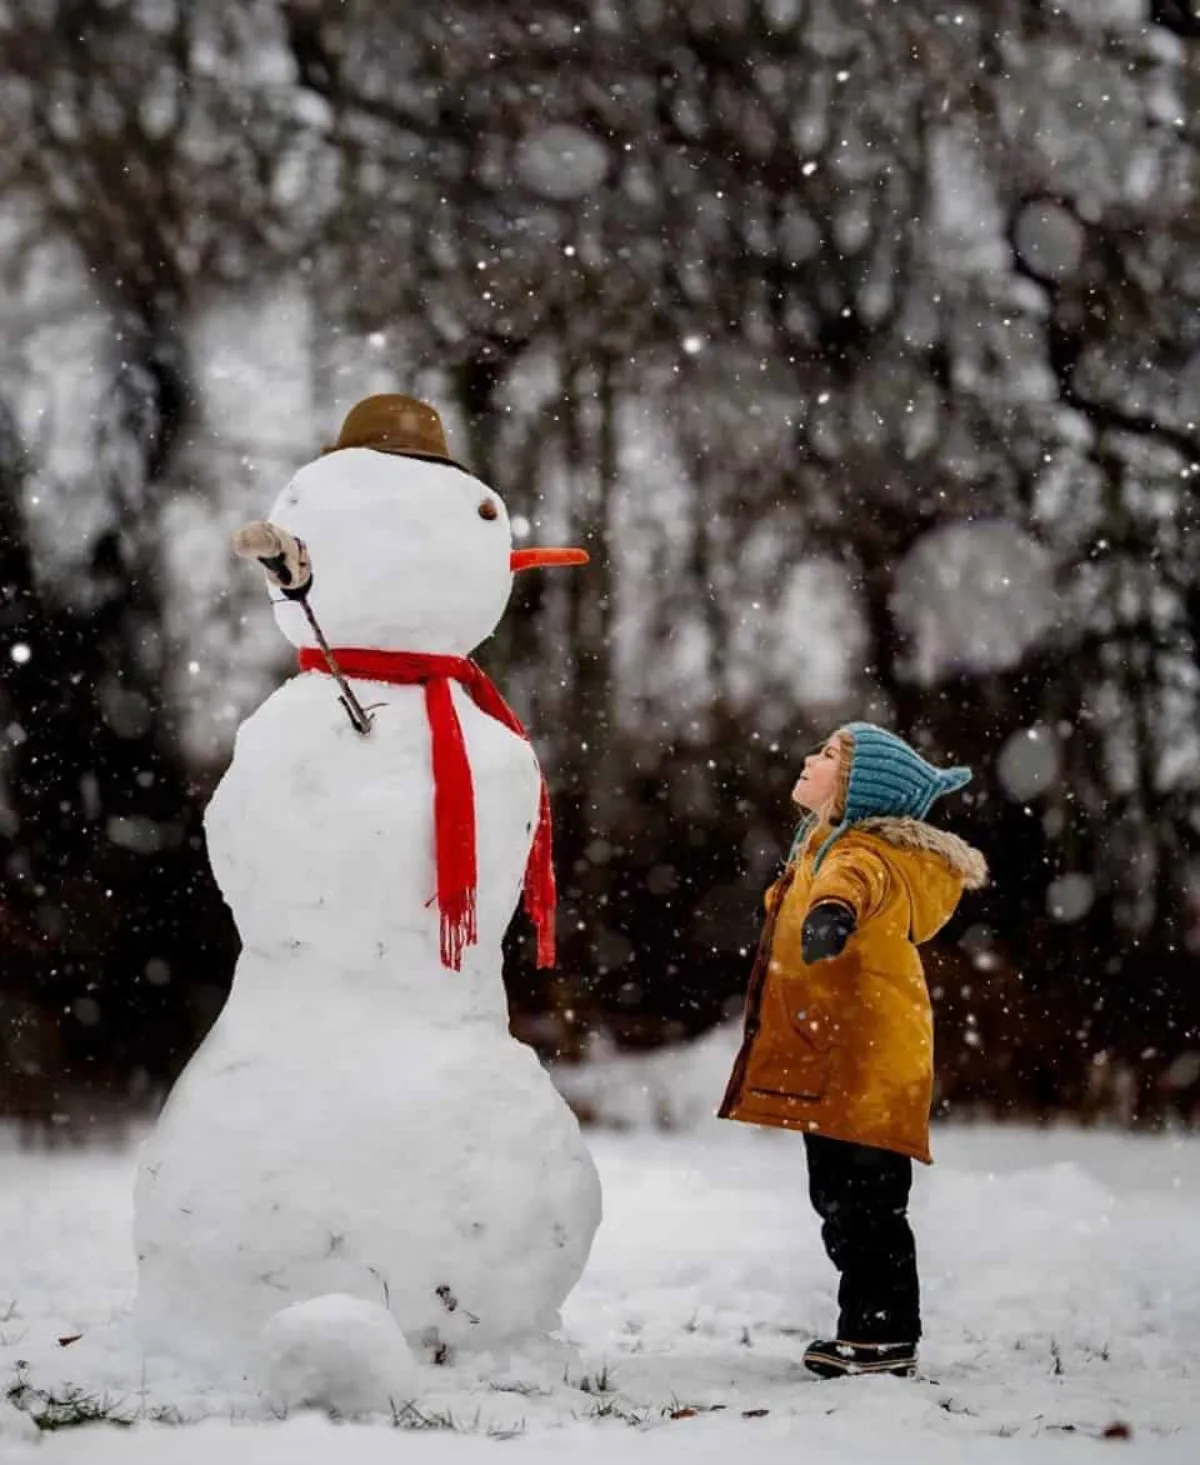 spannende aktivitäten für kinder im winter schneemann bauen